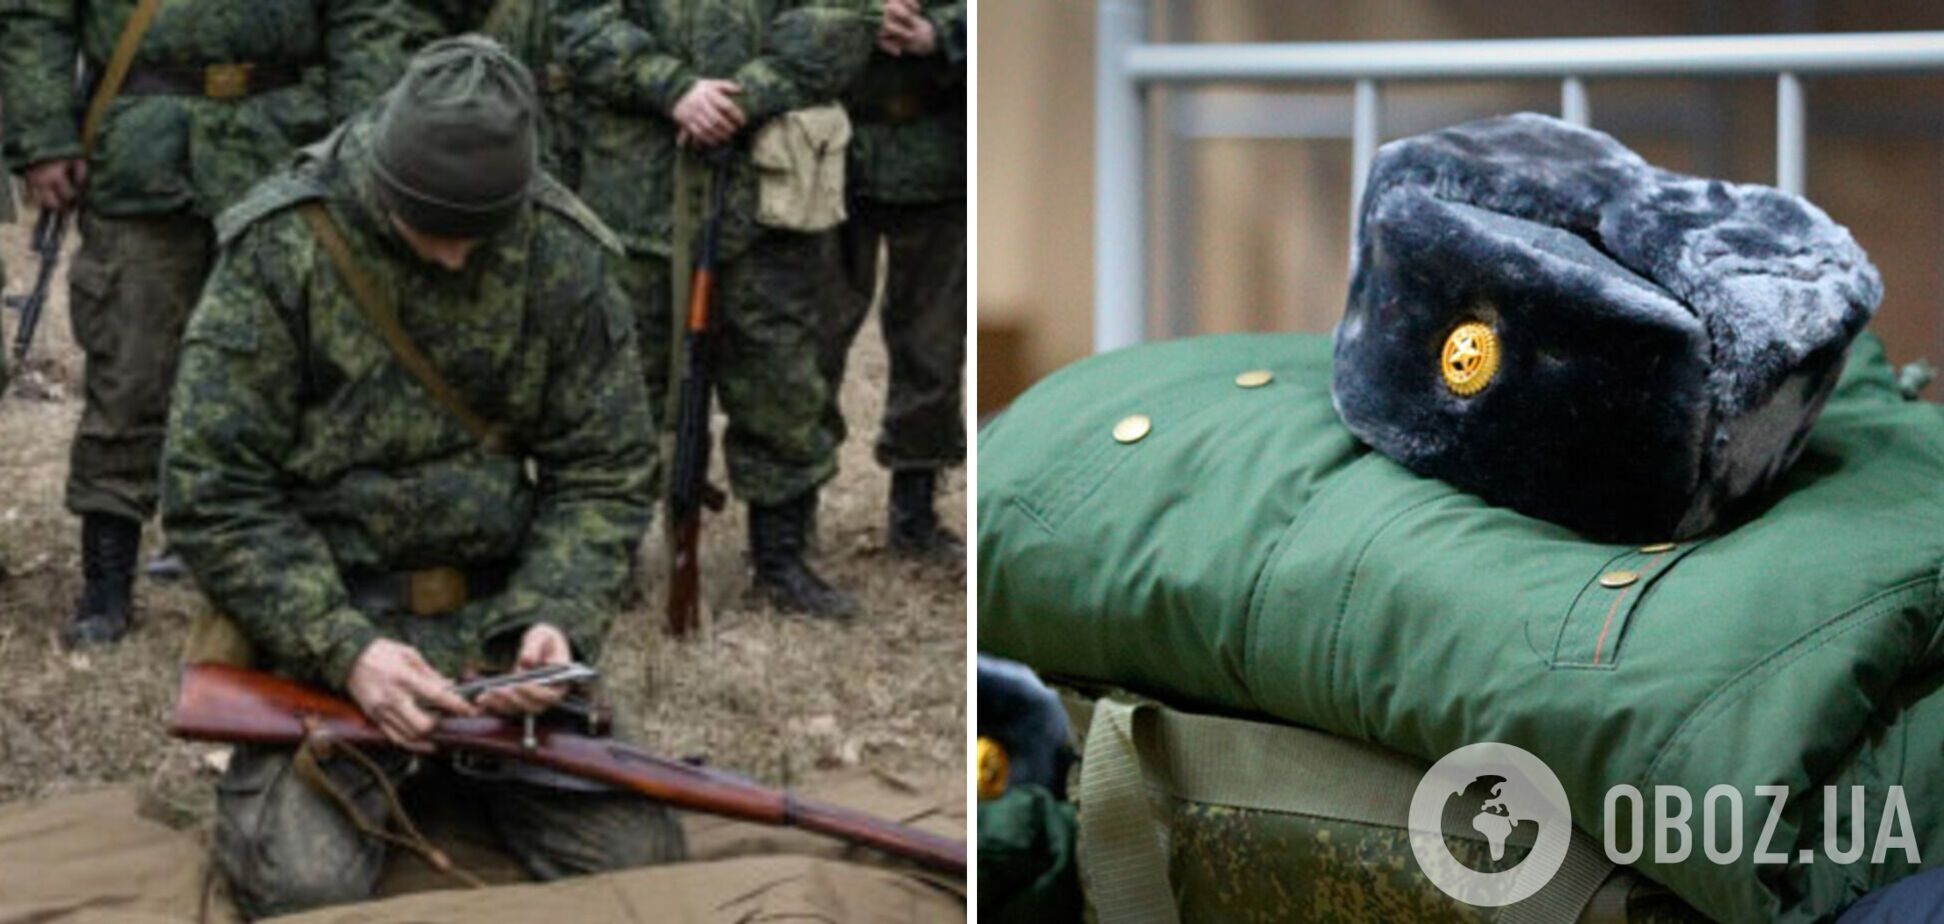 Оккупант на Донецком направлении пожаловался на 'убитую в ноль' технику: из пяти БТРов у трех не вращается башня. Аудио